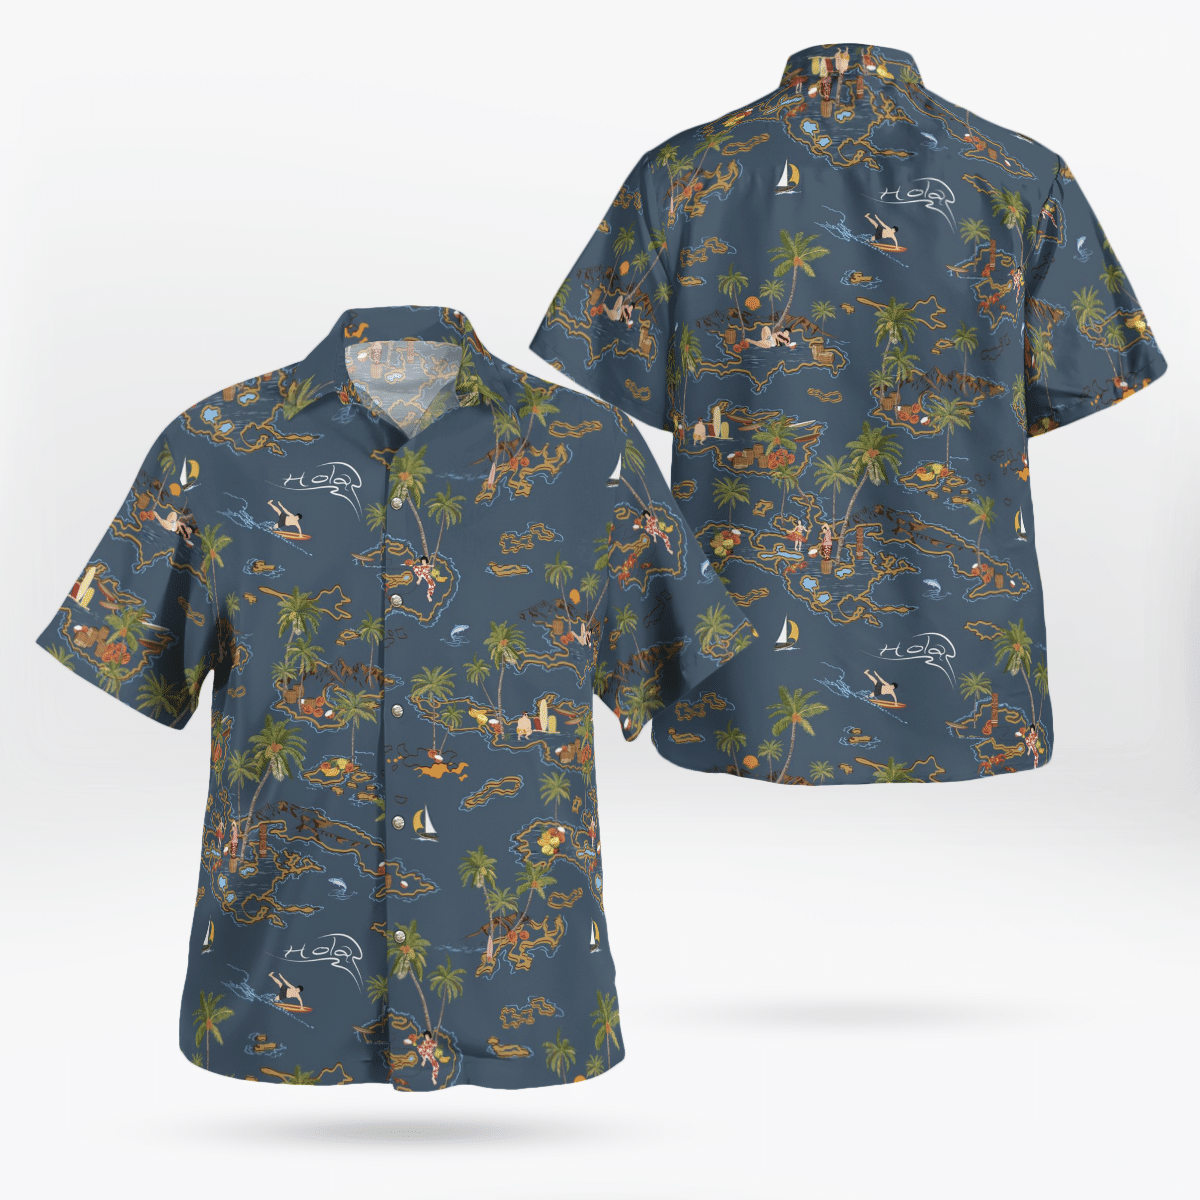 You won't regret buying these Aloha Shirt 95